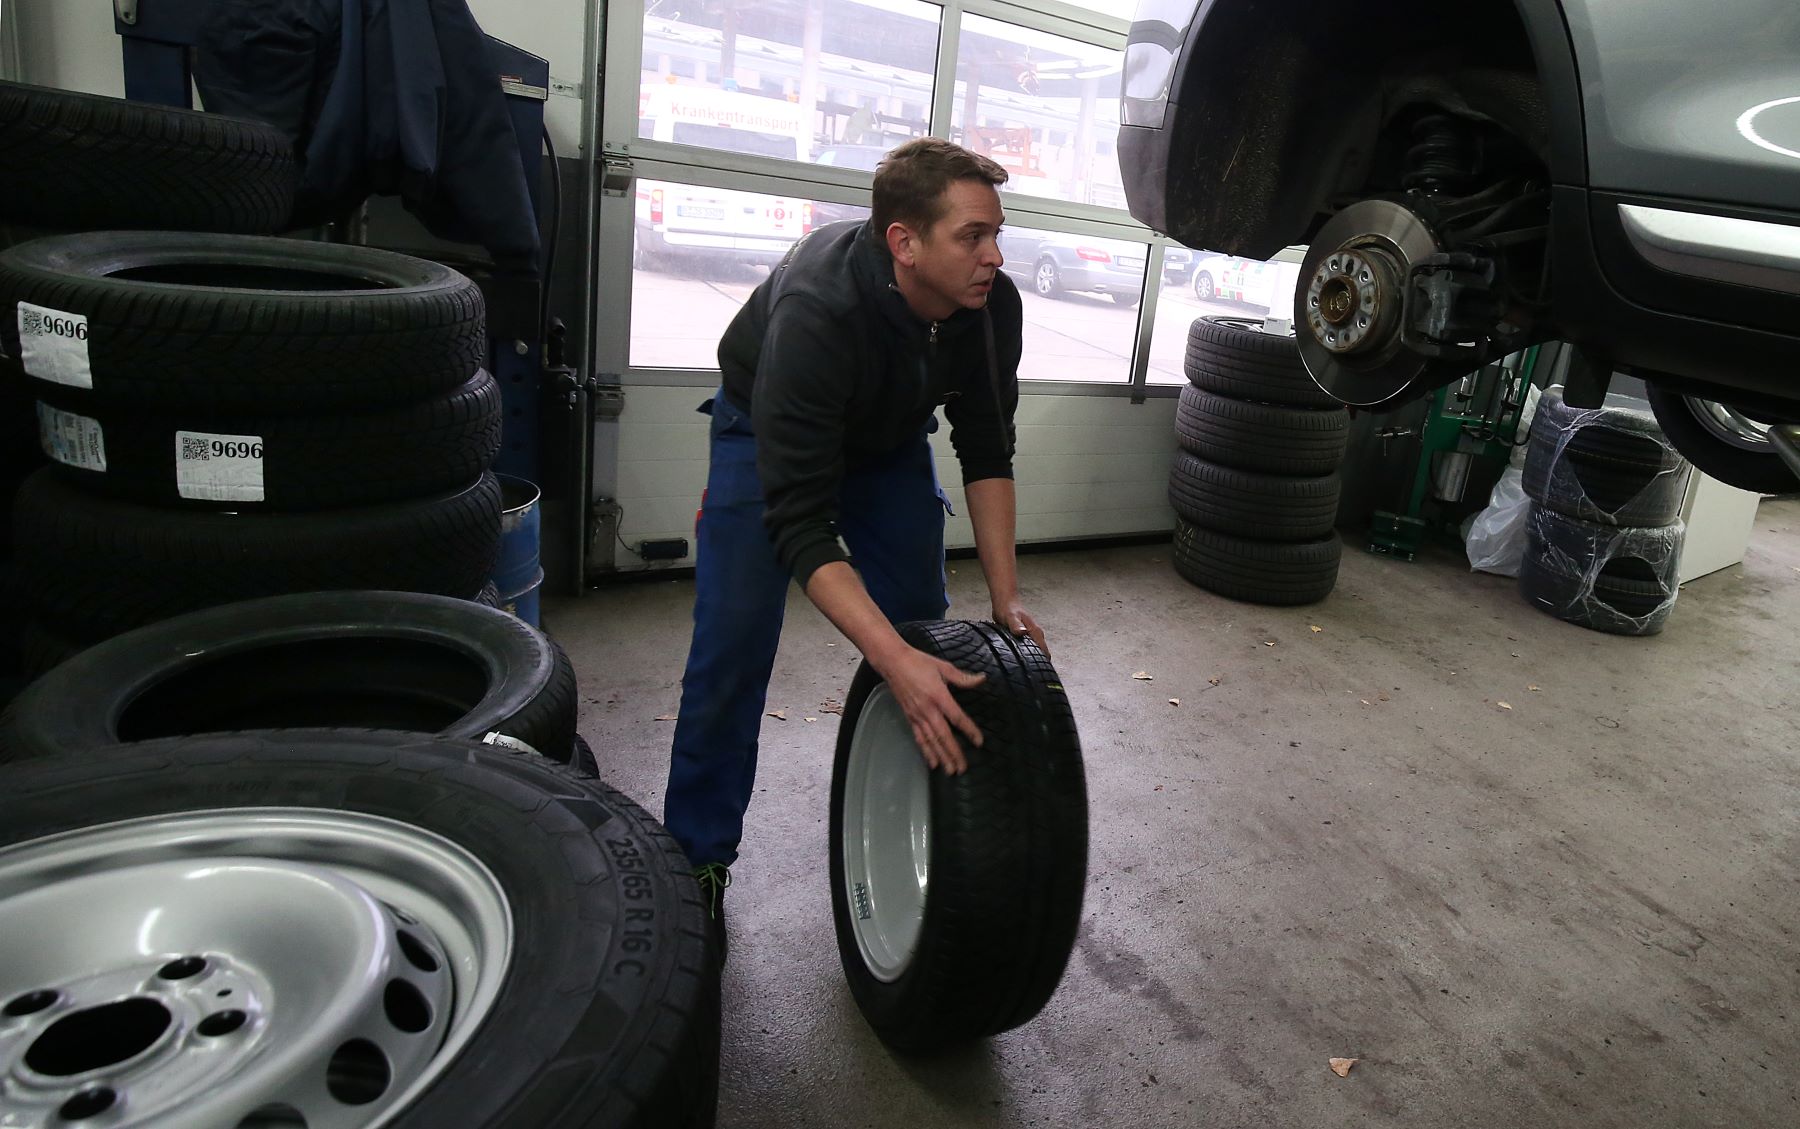 Replacing a tire in a car repair shop in Lichtenberg, Berlin, Germany